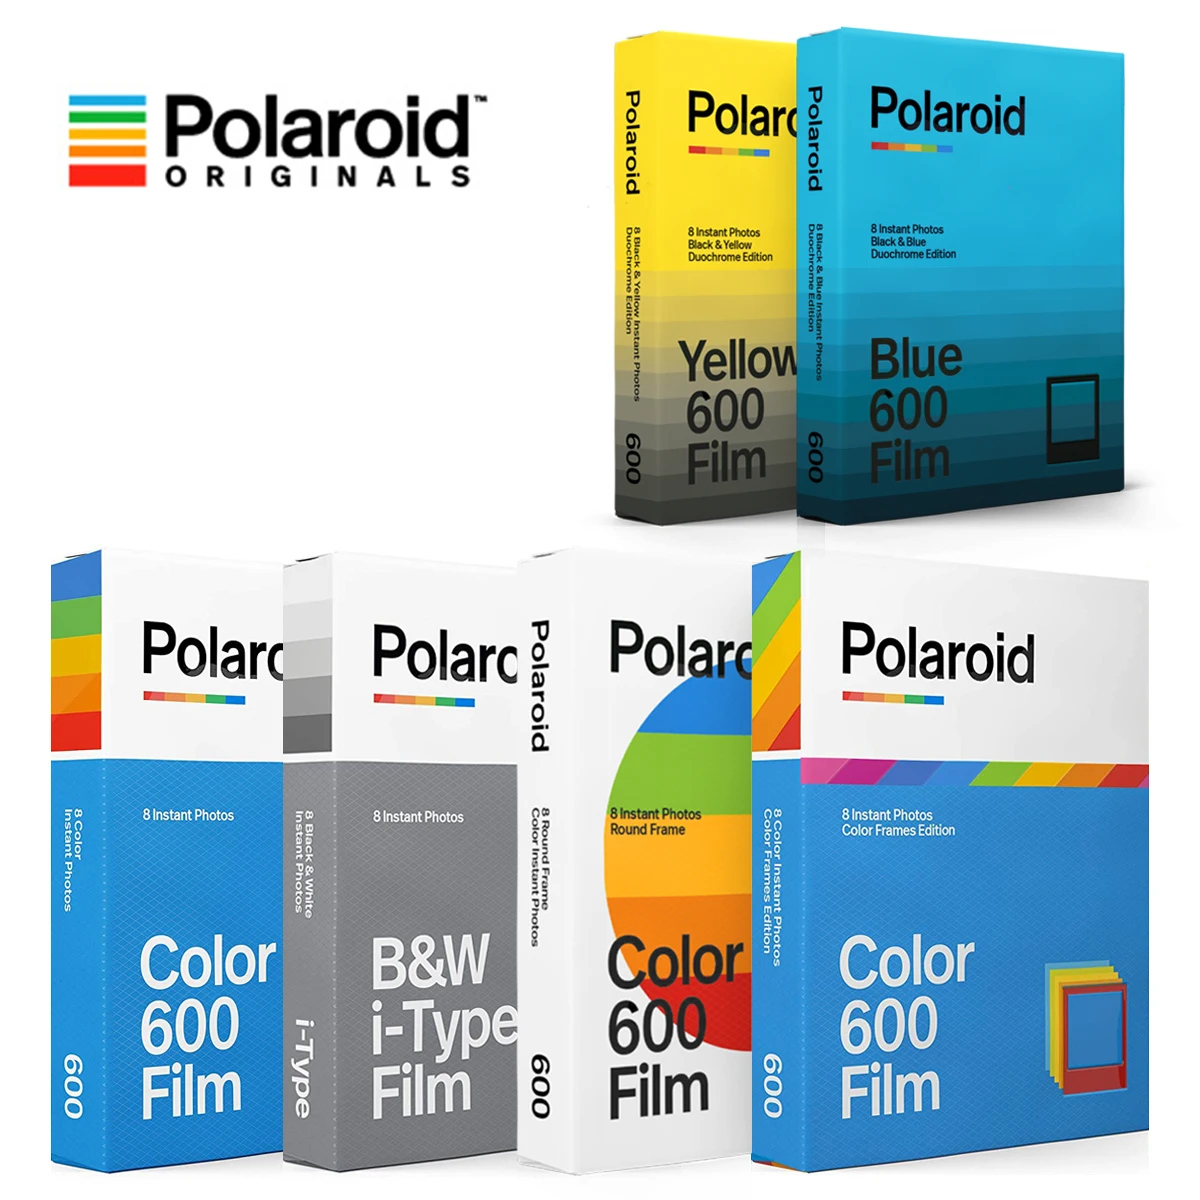 2  Polaroid Originals Farb Film Impossible für for 600 und and Impulse Cameras 